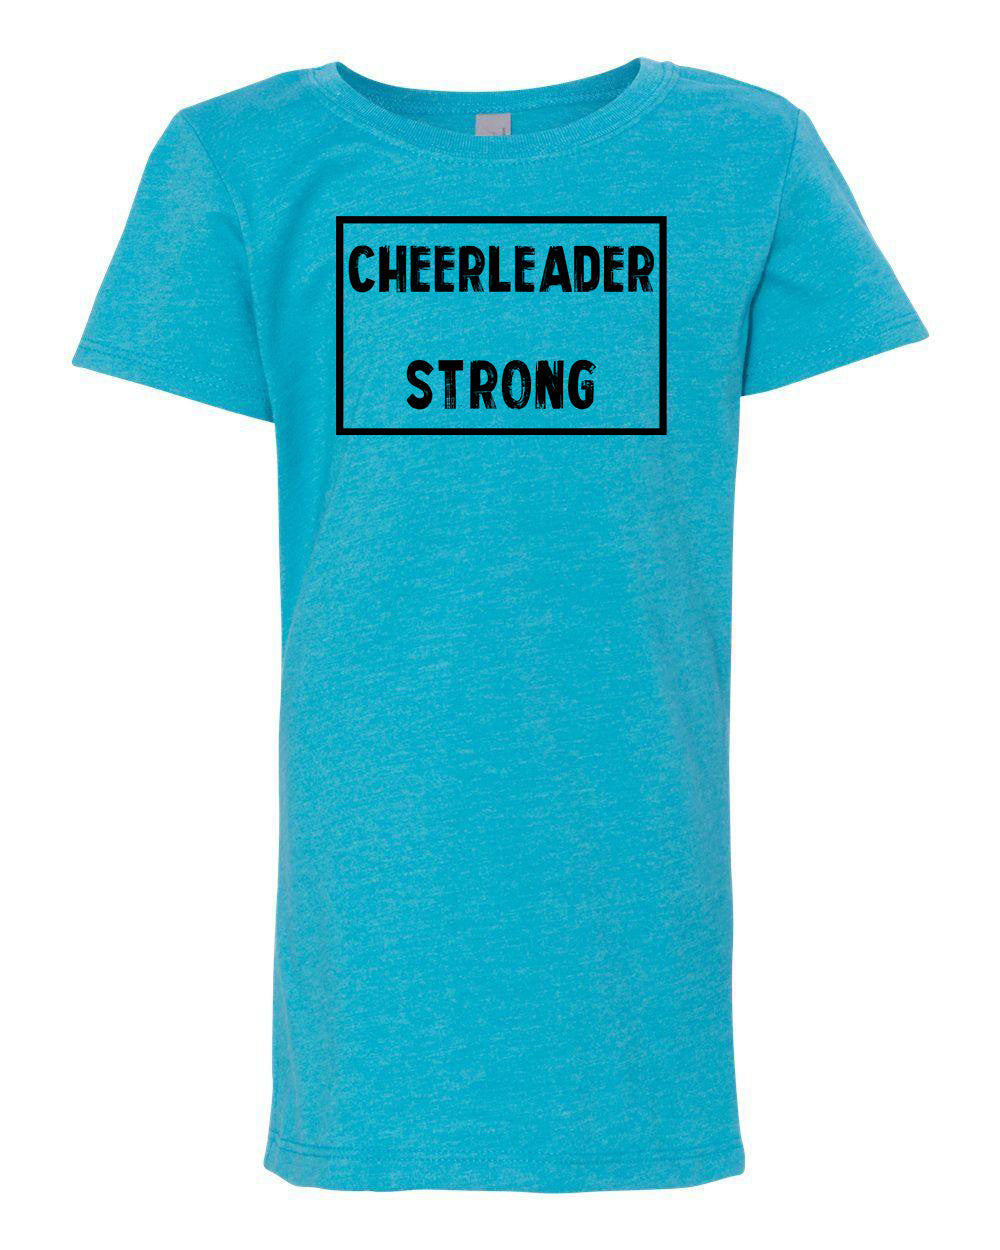 Cheerleader Strong Girls T-Shirt Ocean Blue